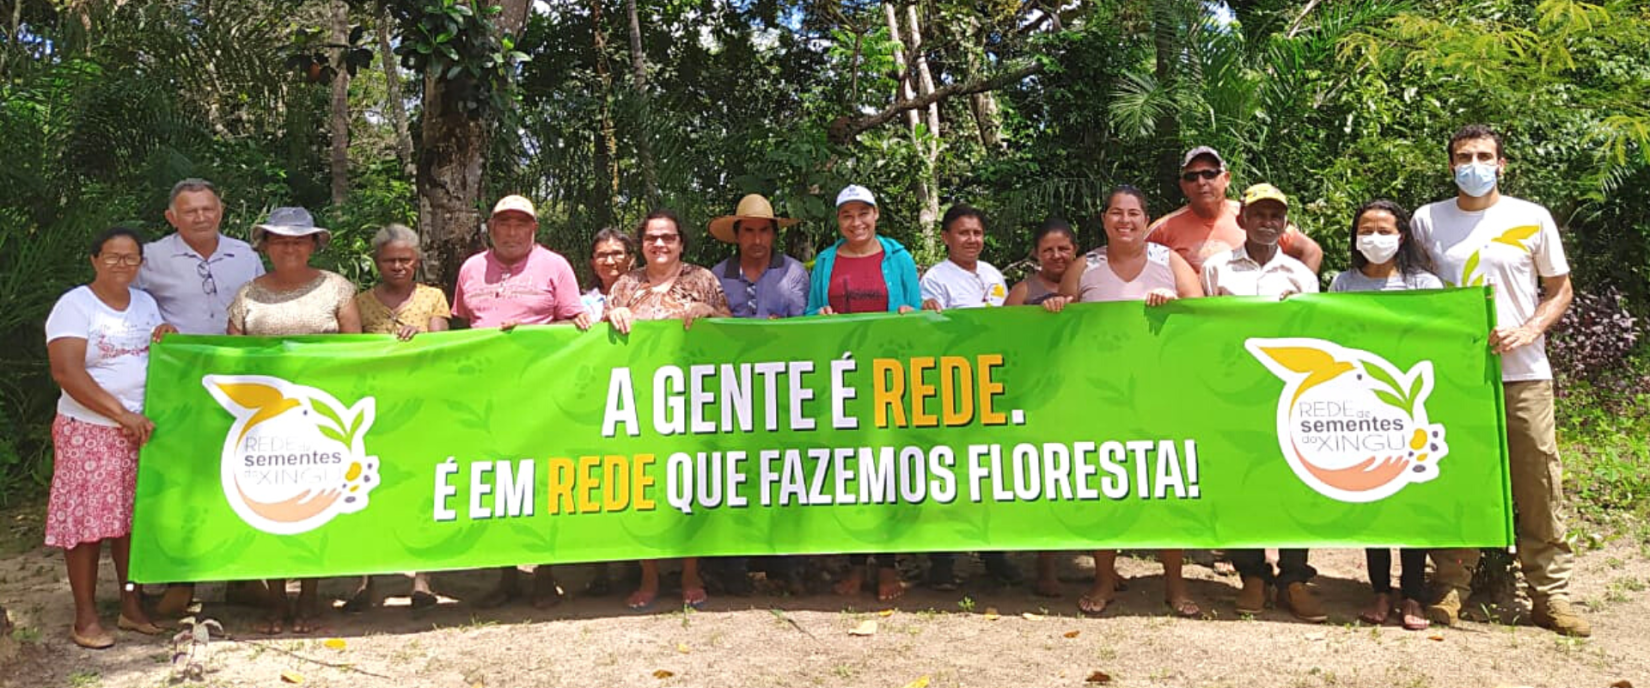 A Associação Rede de Sementes do Xingu reúne mulheres de 25 comunidades indígenas, agrícolas e urbanas para coletar e comercializar mais de 220 espécies diferentes de sementes para reflorestamento ecológico em larga escala da Amazônia e do Cerrado. 